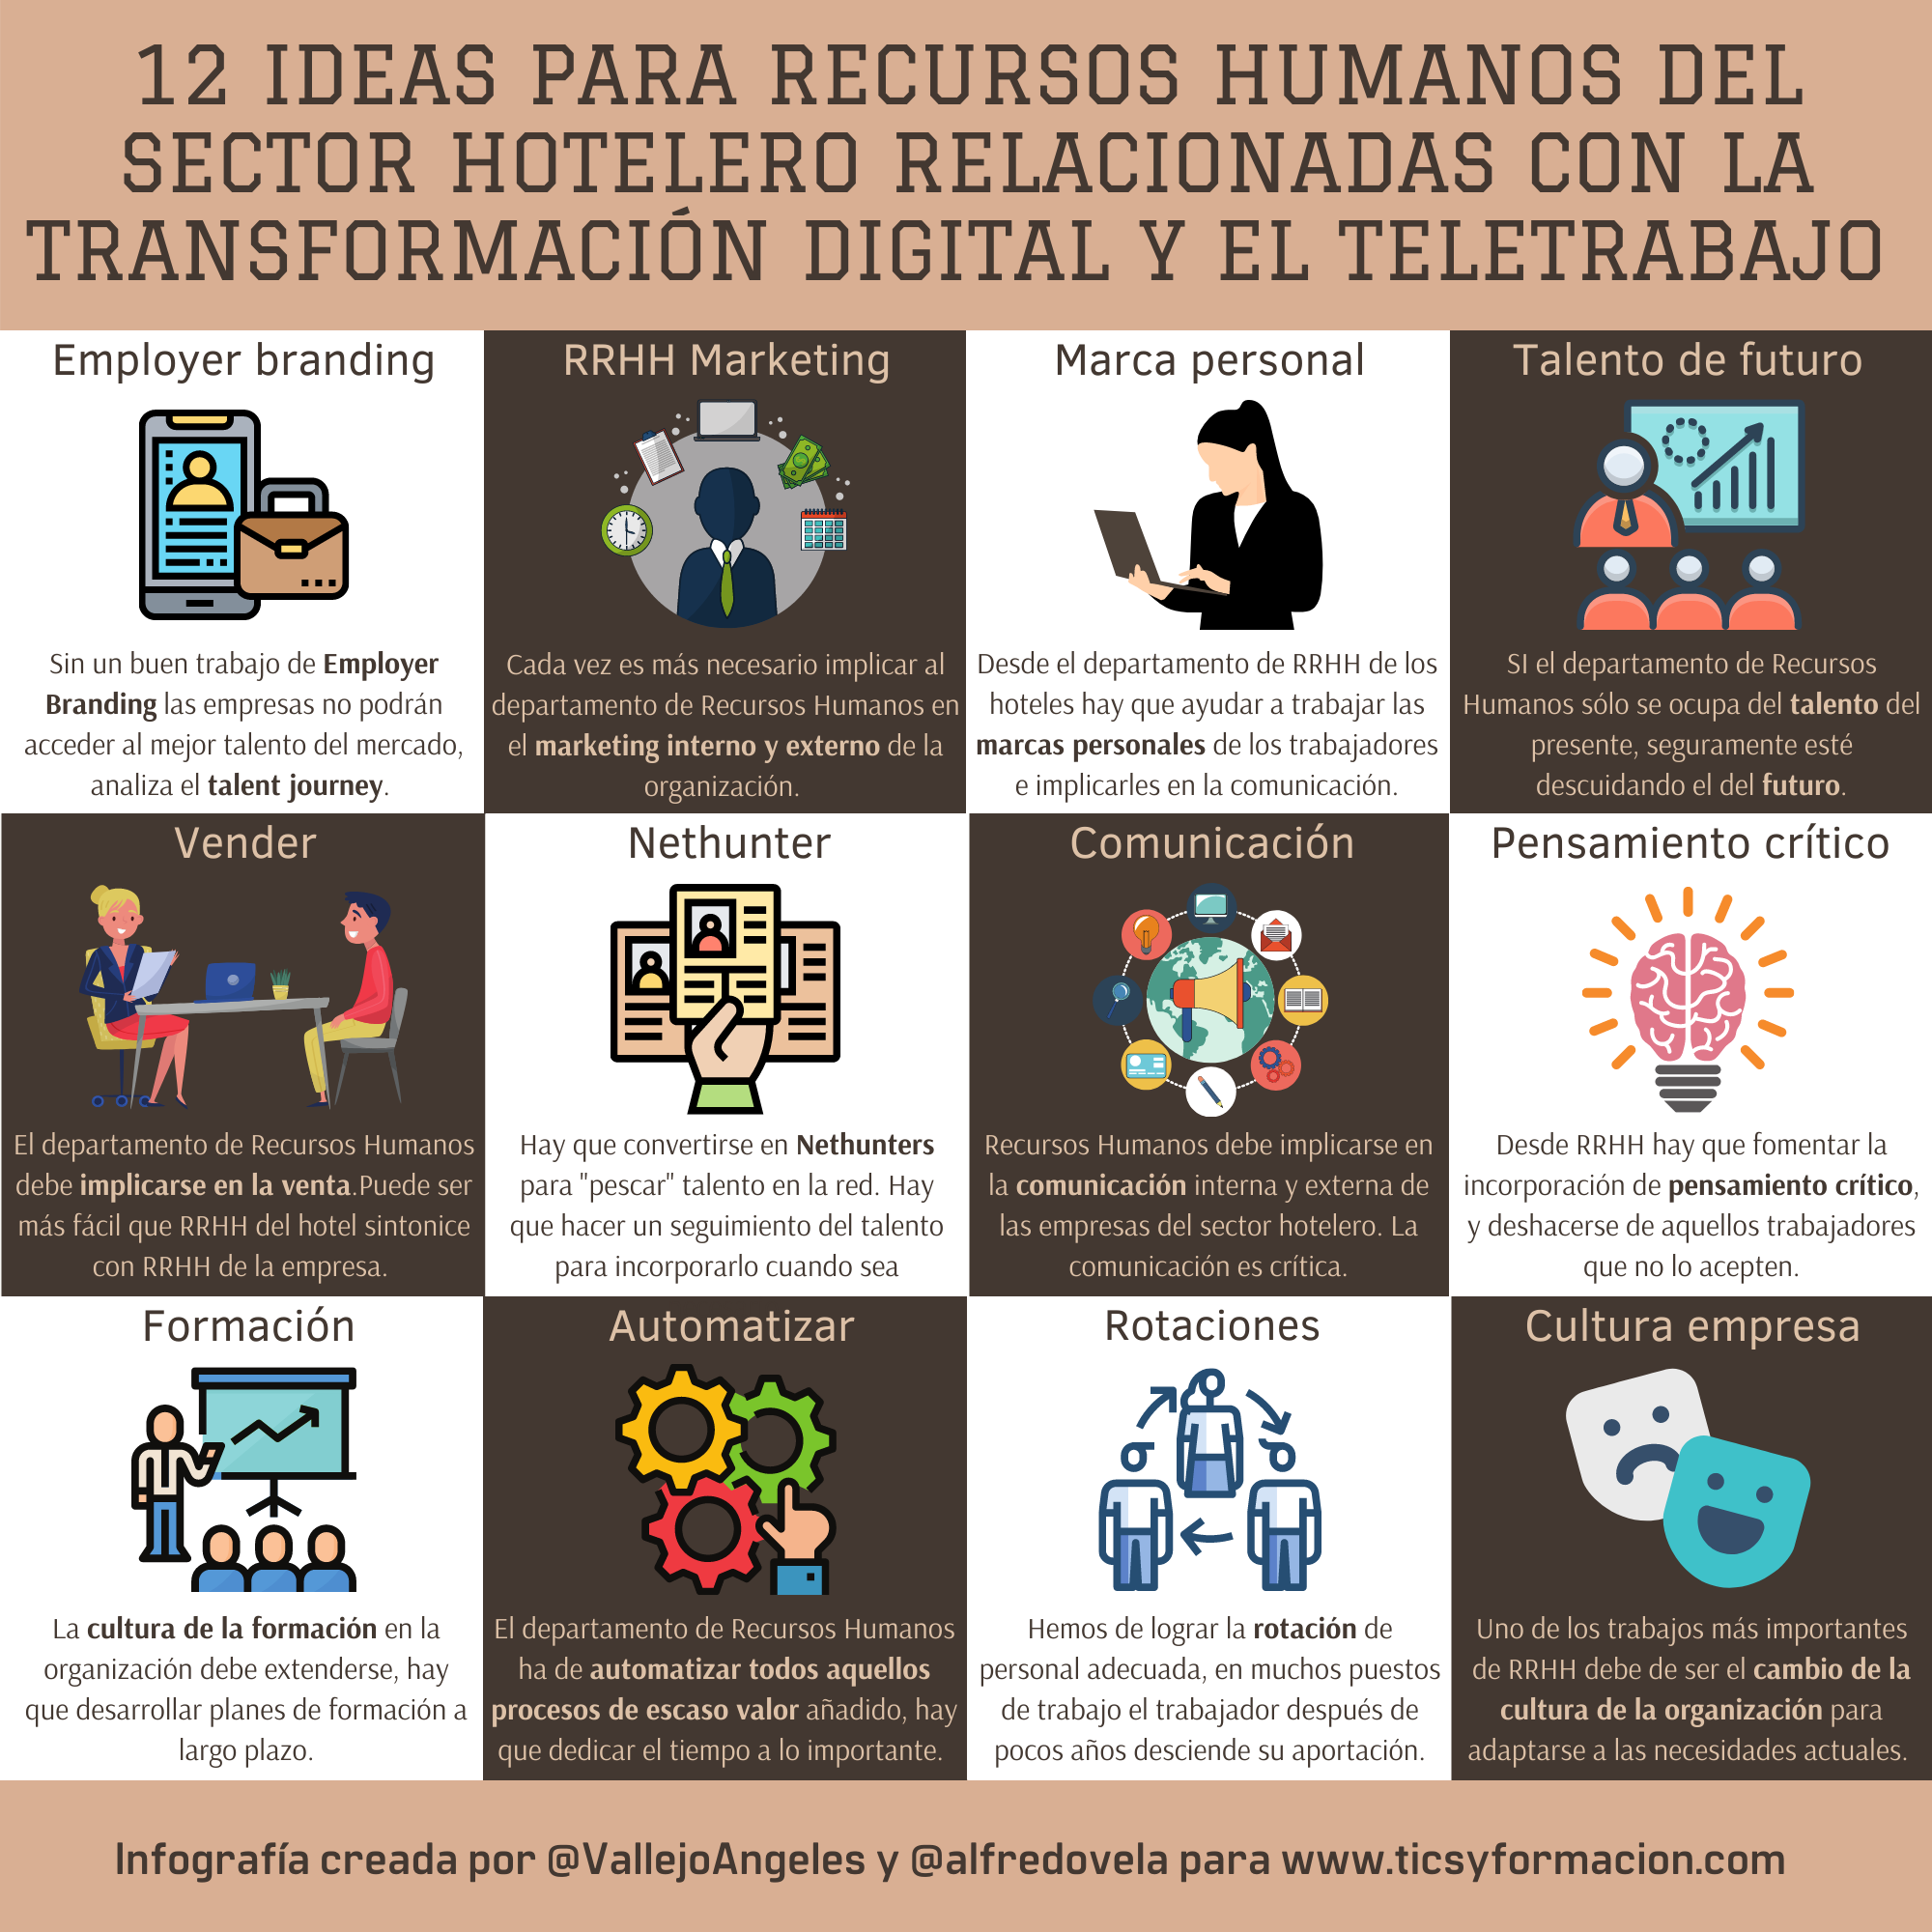 12 ideas para recursos humanos del sector hotelero relacionadas con la #transformacióndigital y el #teletrabajo #infografia #rrhh